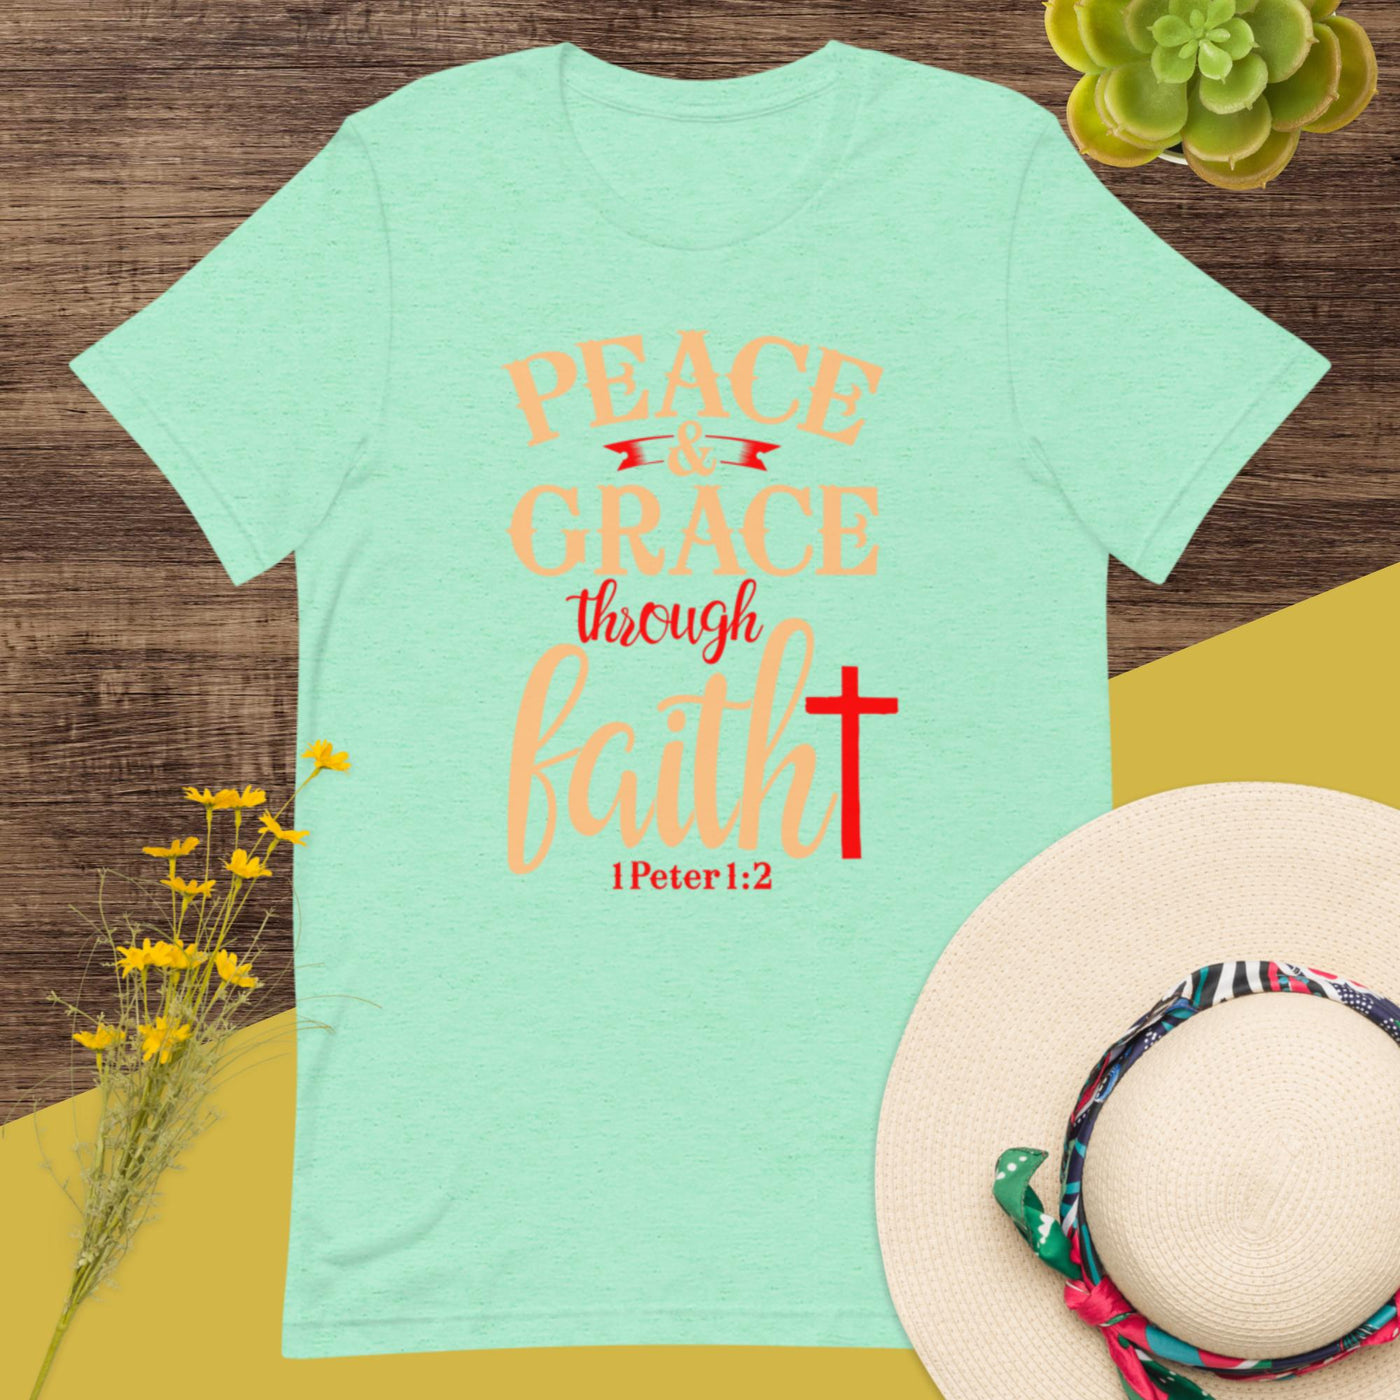 F&H Christian Peace & Grace Through Faith Womens t-shirt